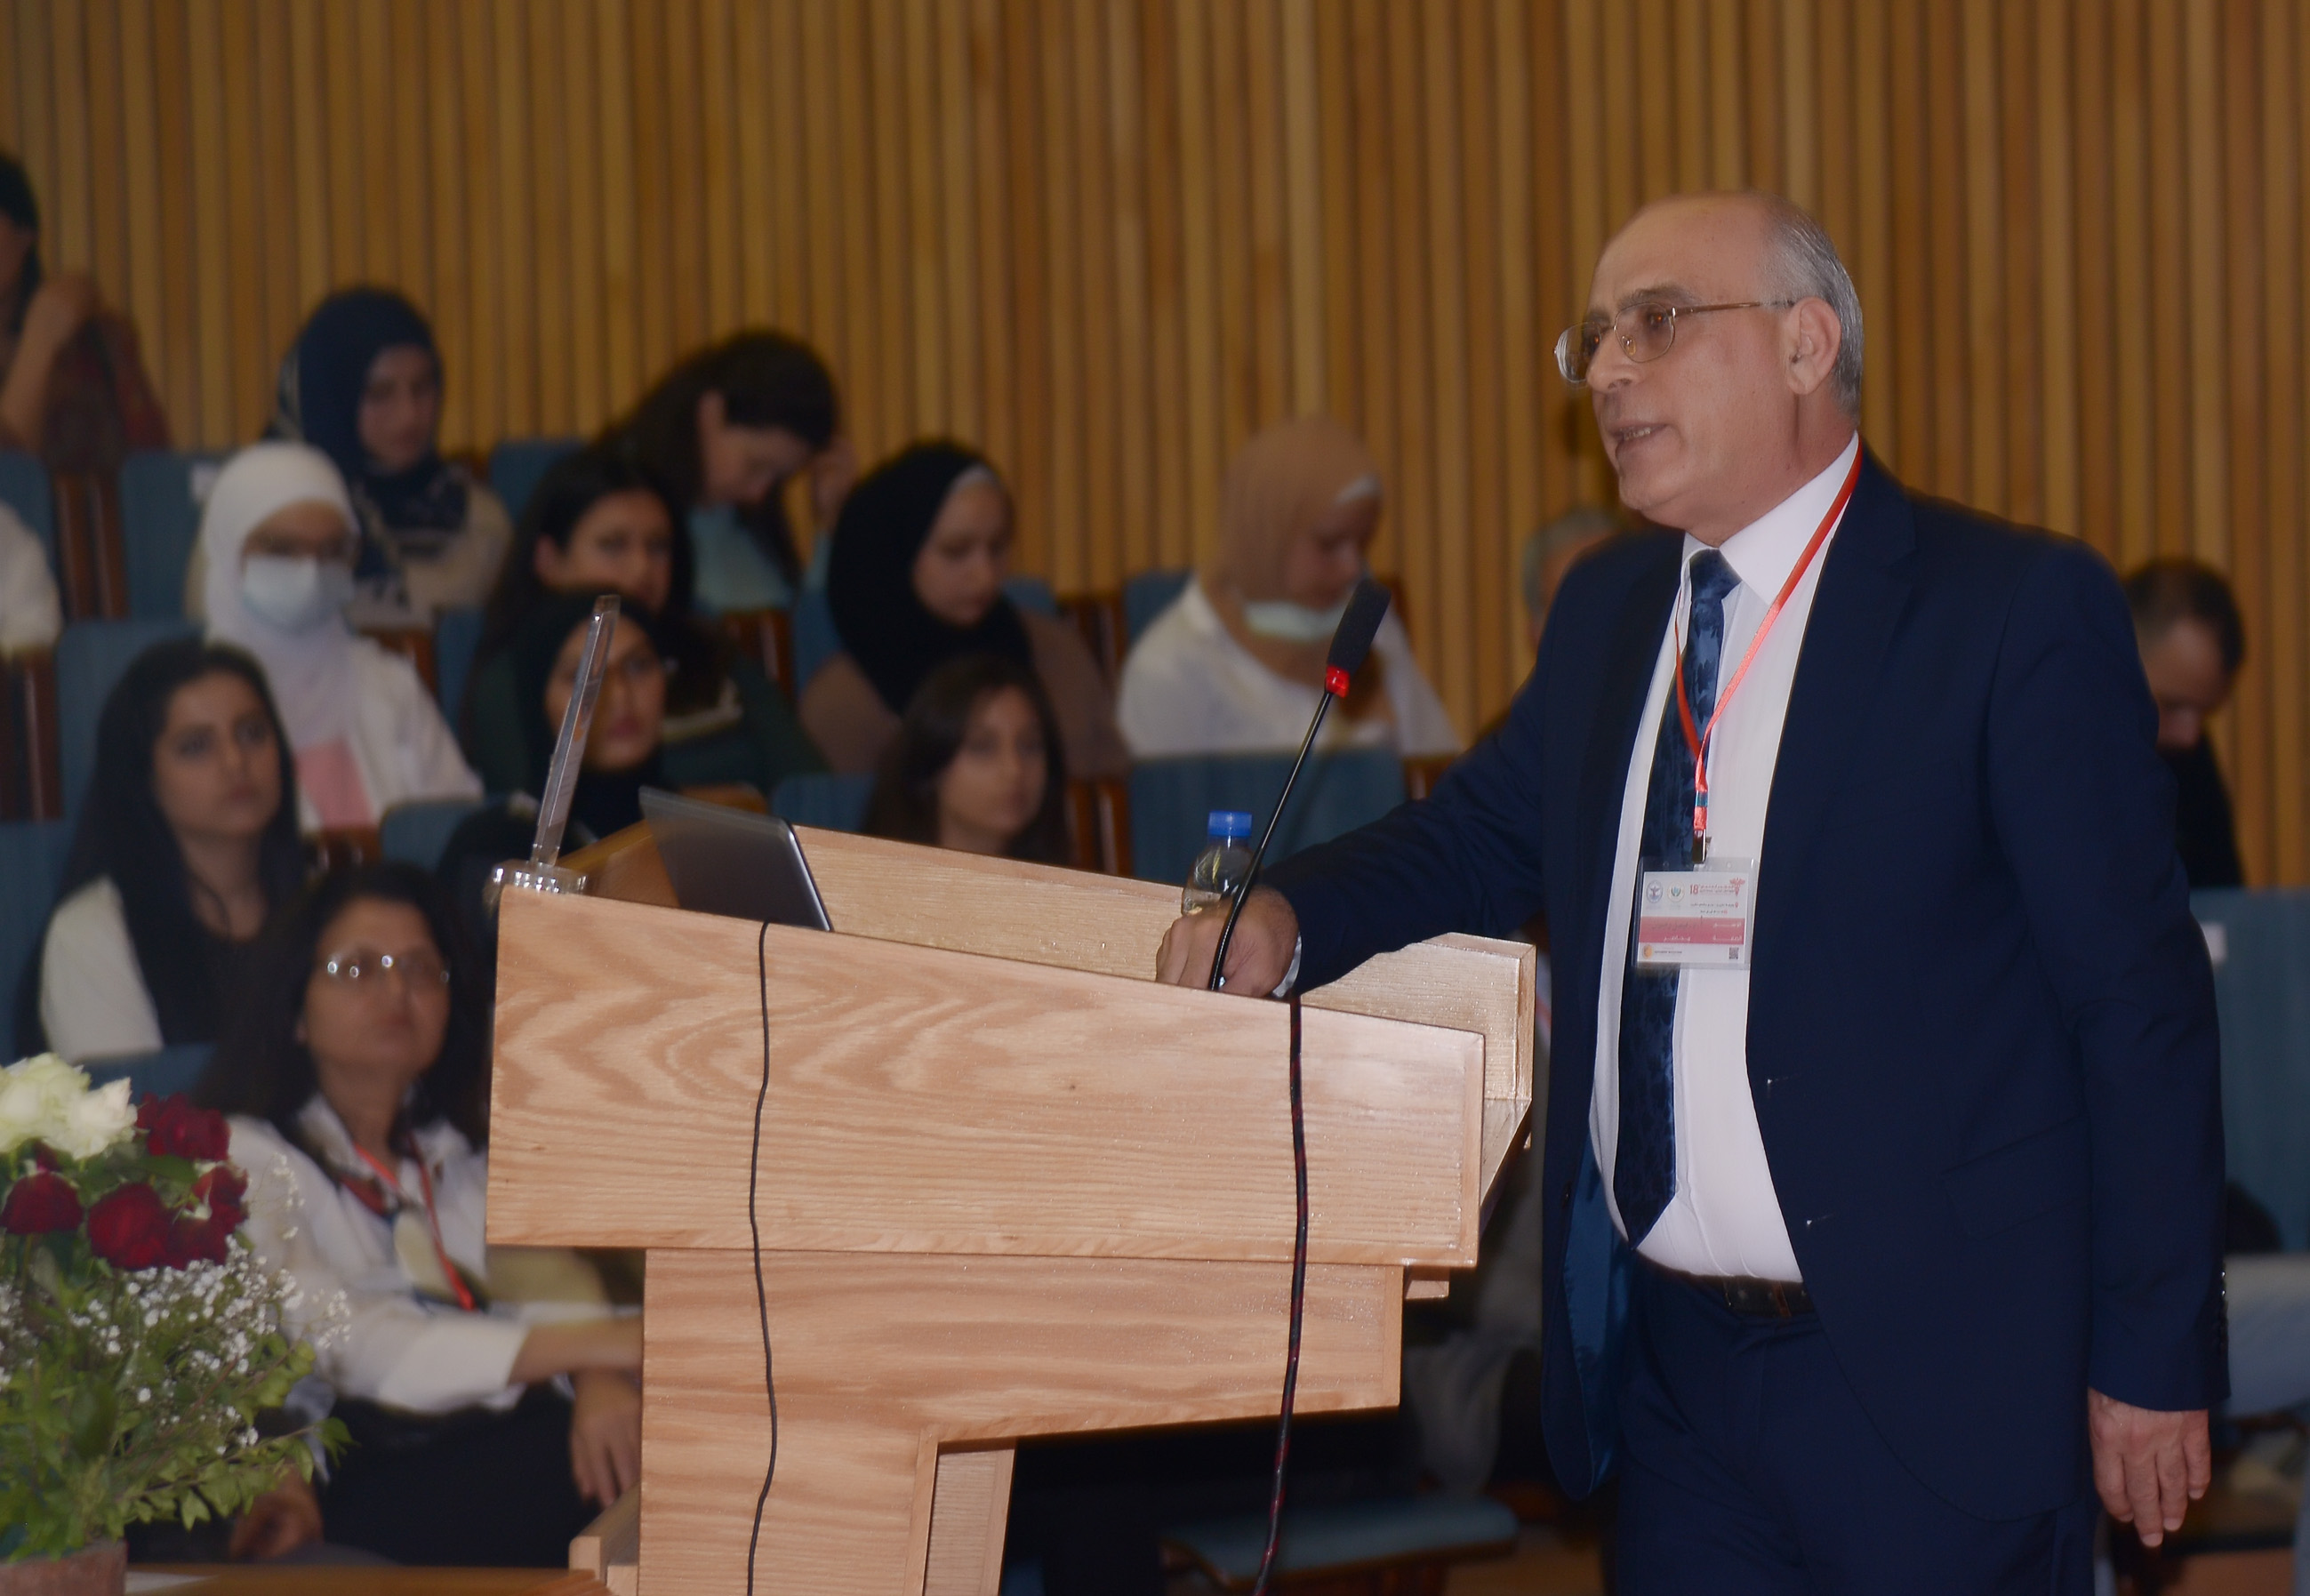 صور من فعاليات اليوم الثالث للمؤتمر كلية الطب البشري في جامعة تشرين